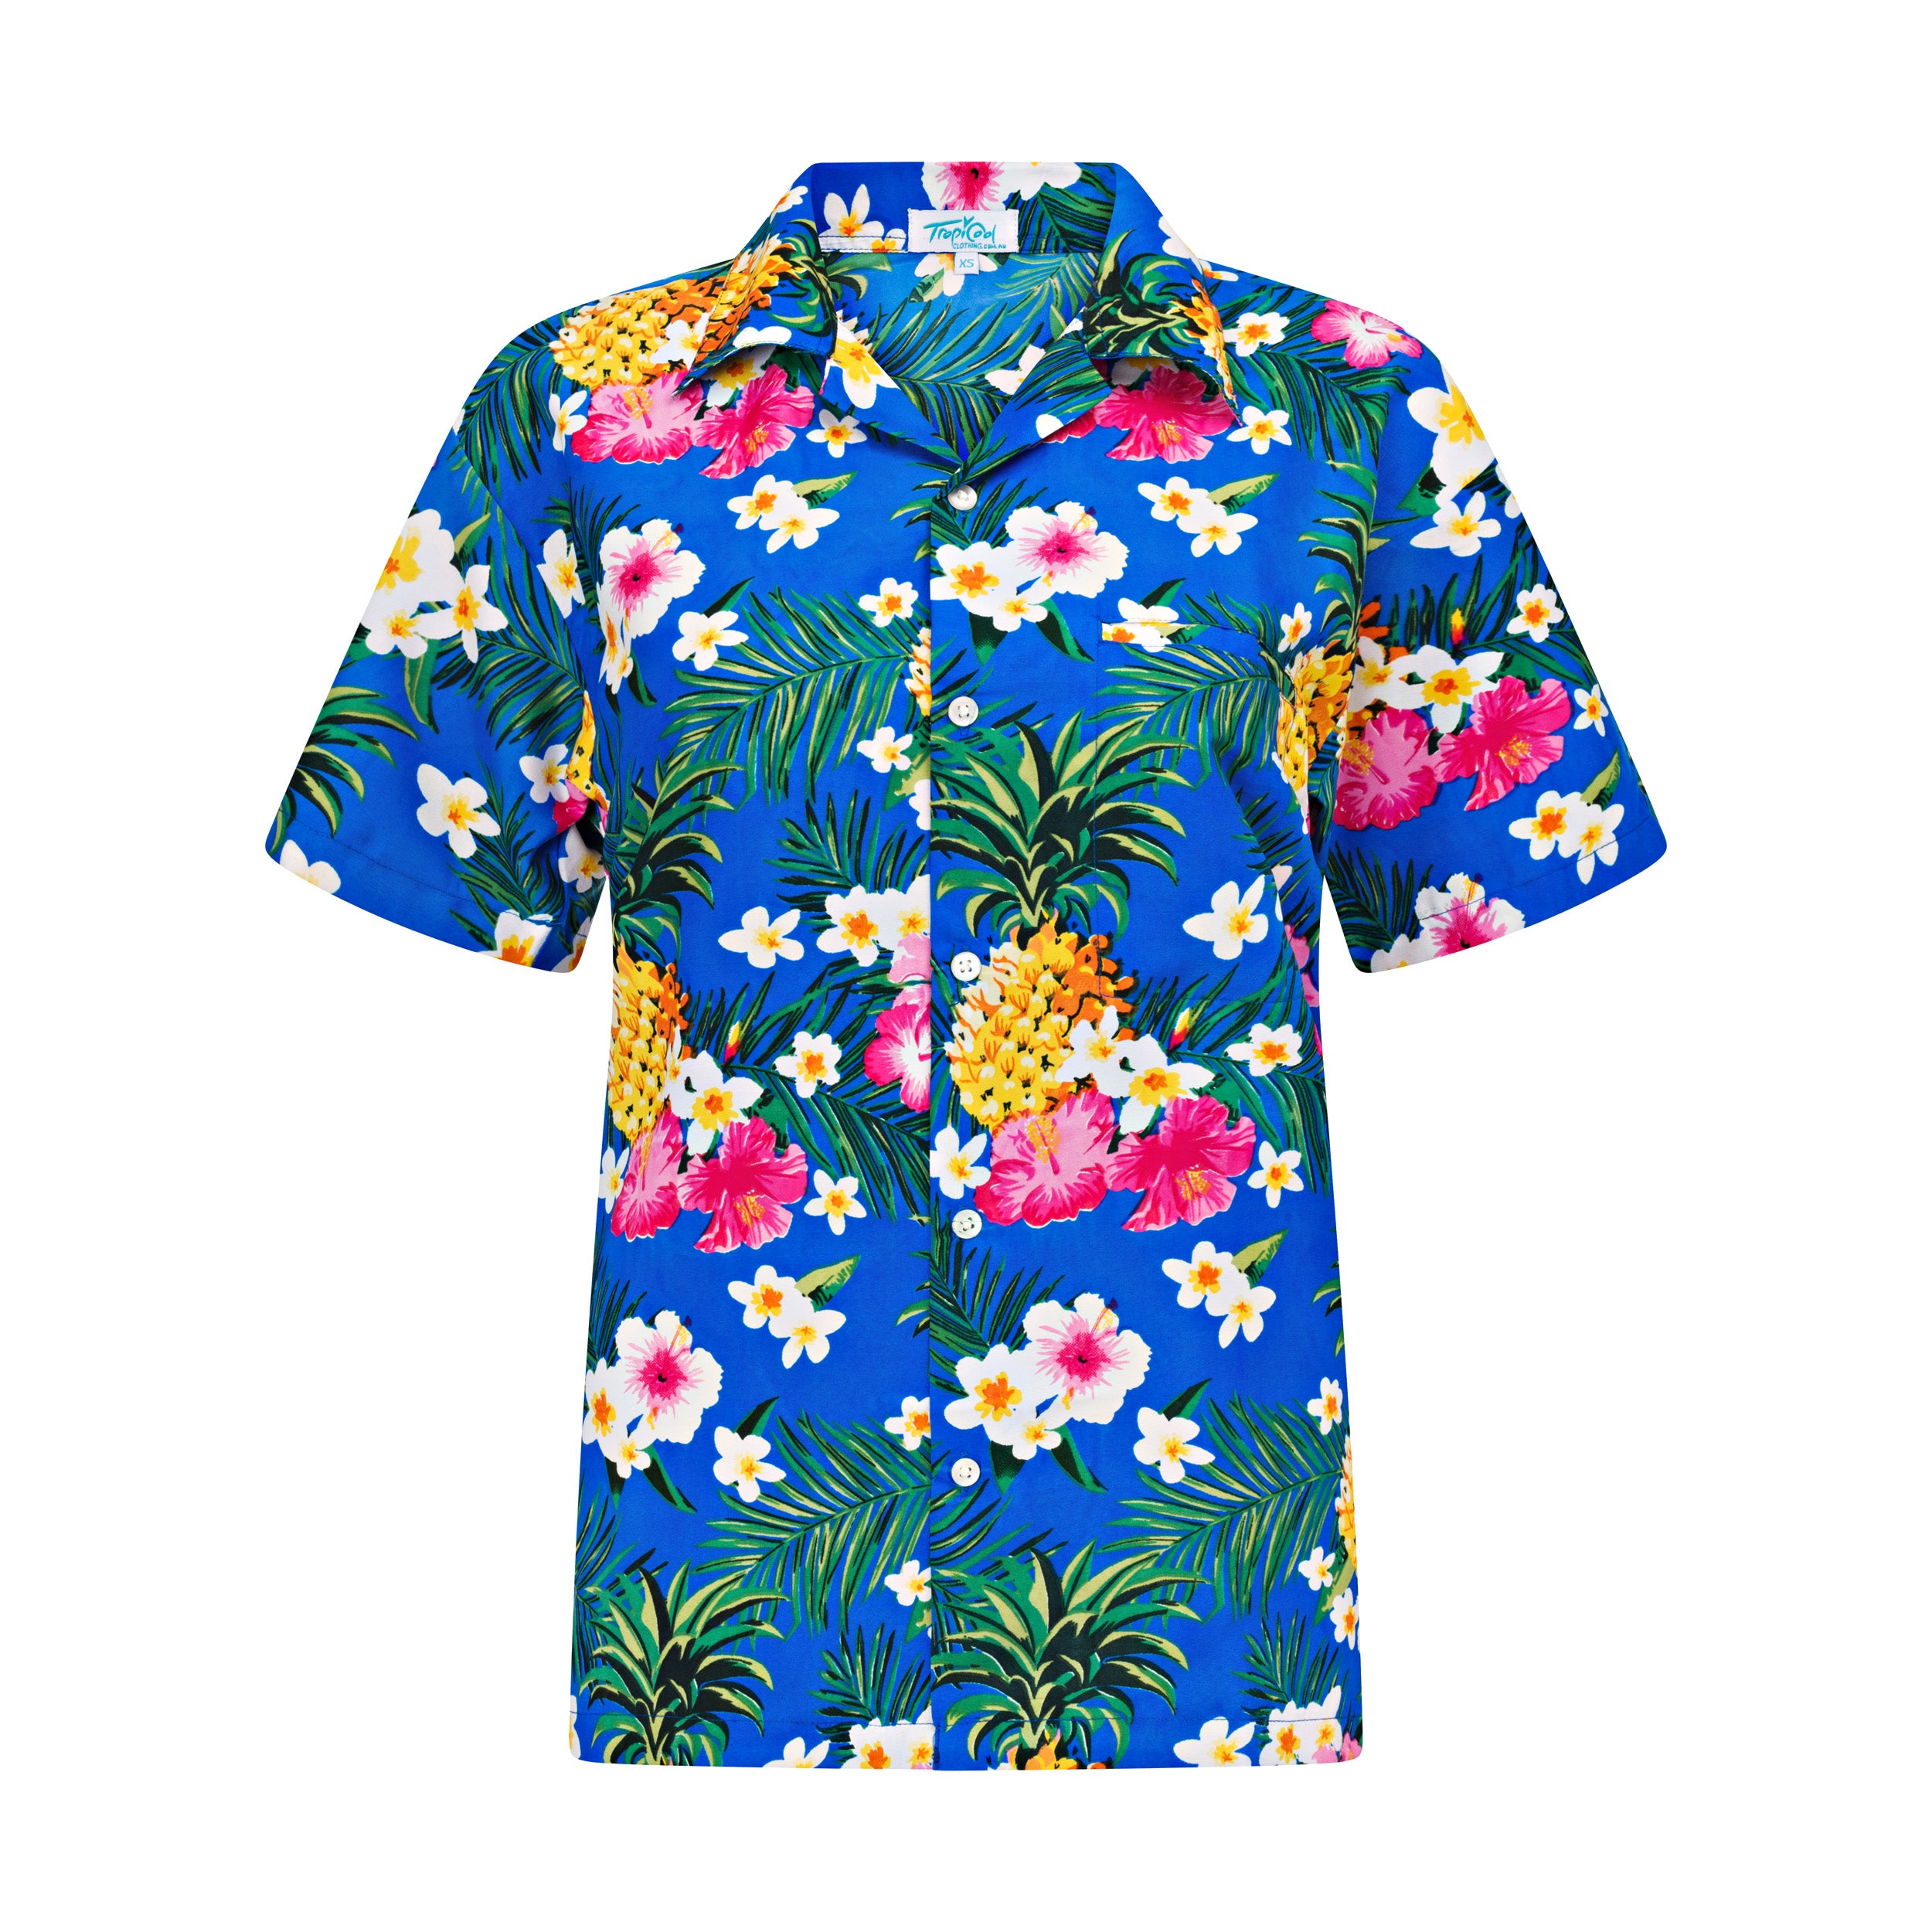 AlohaBlueShirt-Adult.jpg